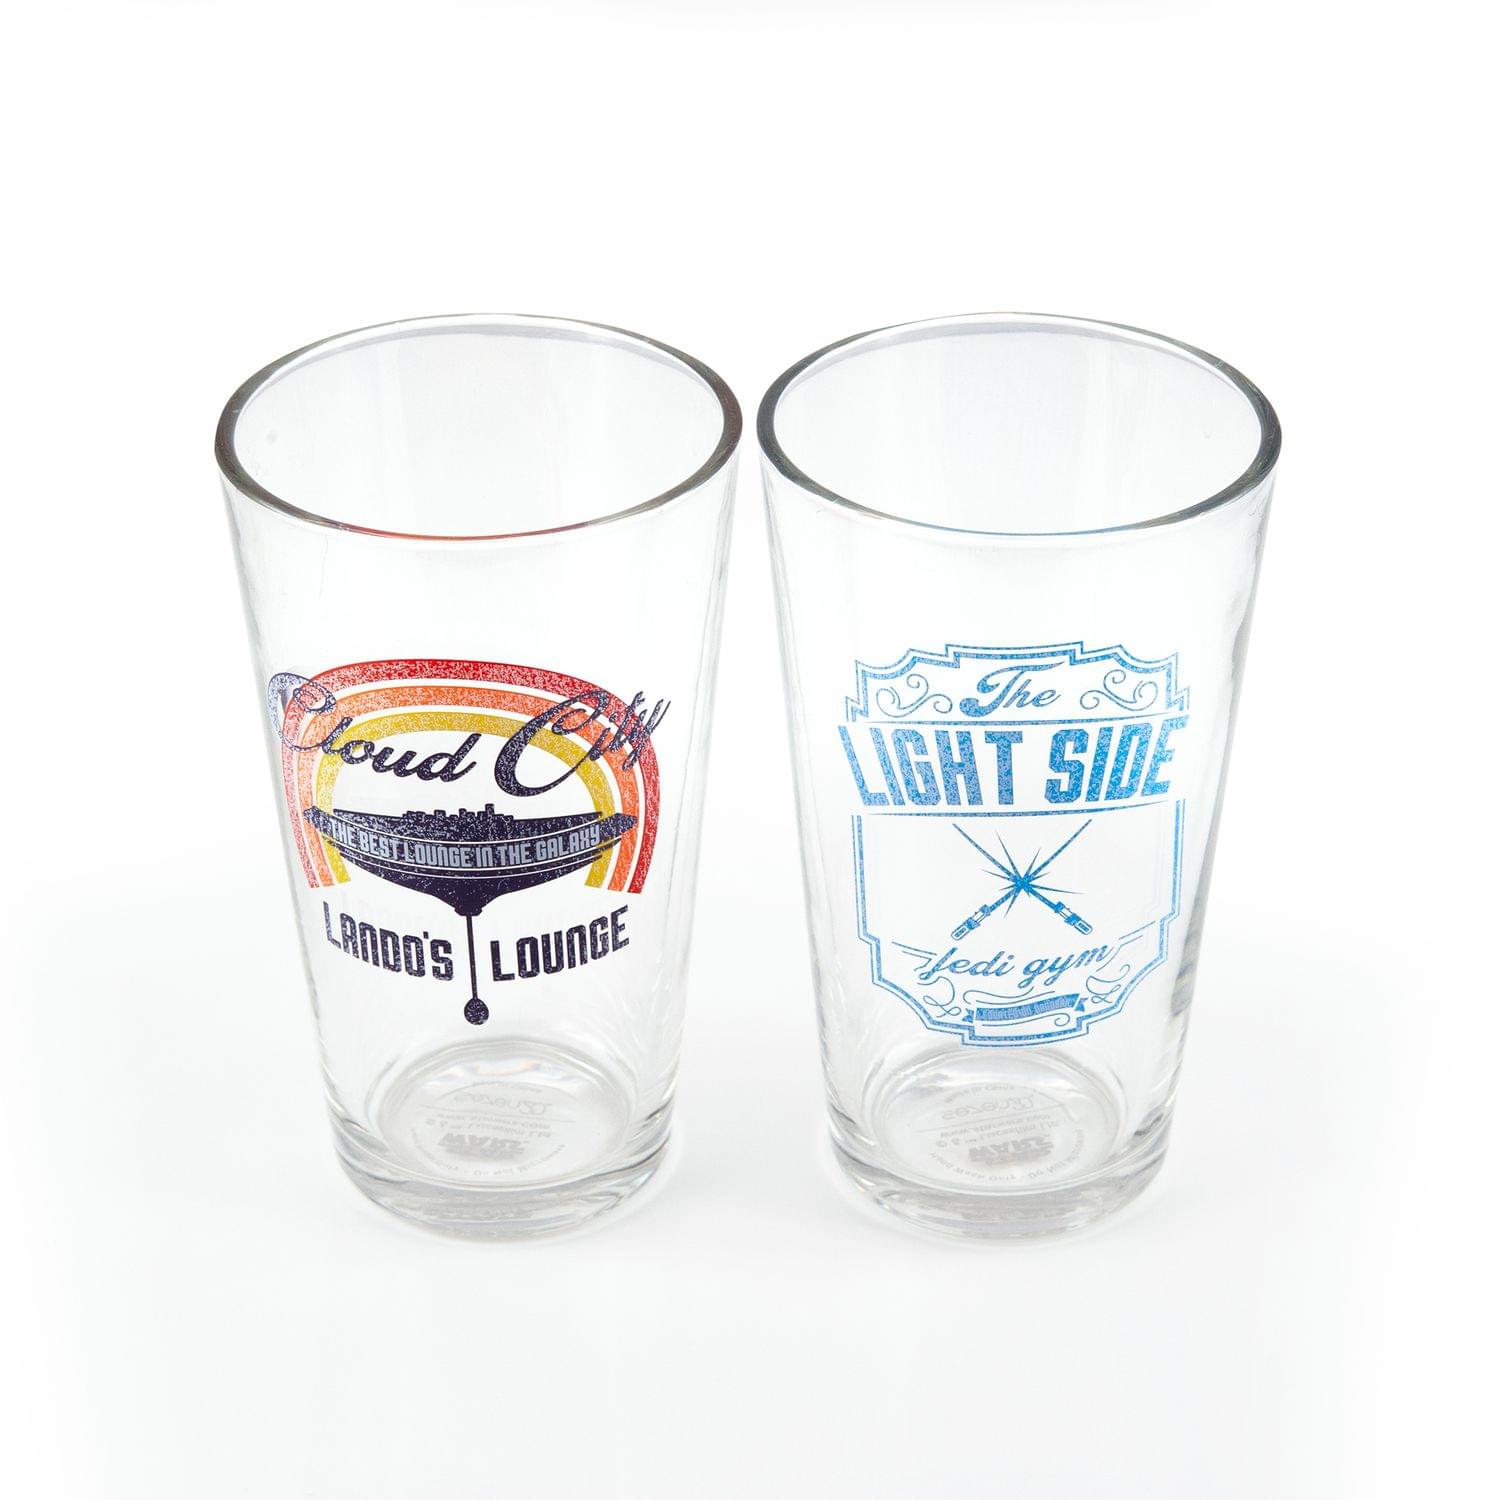 Star Wars Pint Glass Set | Lando's Lounge & Jedi Gym Pint Glasses | Set Of 2